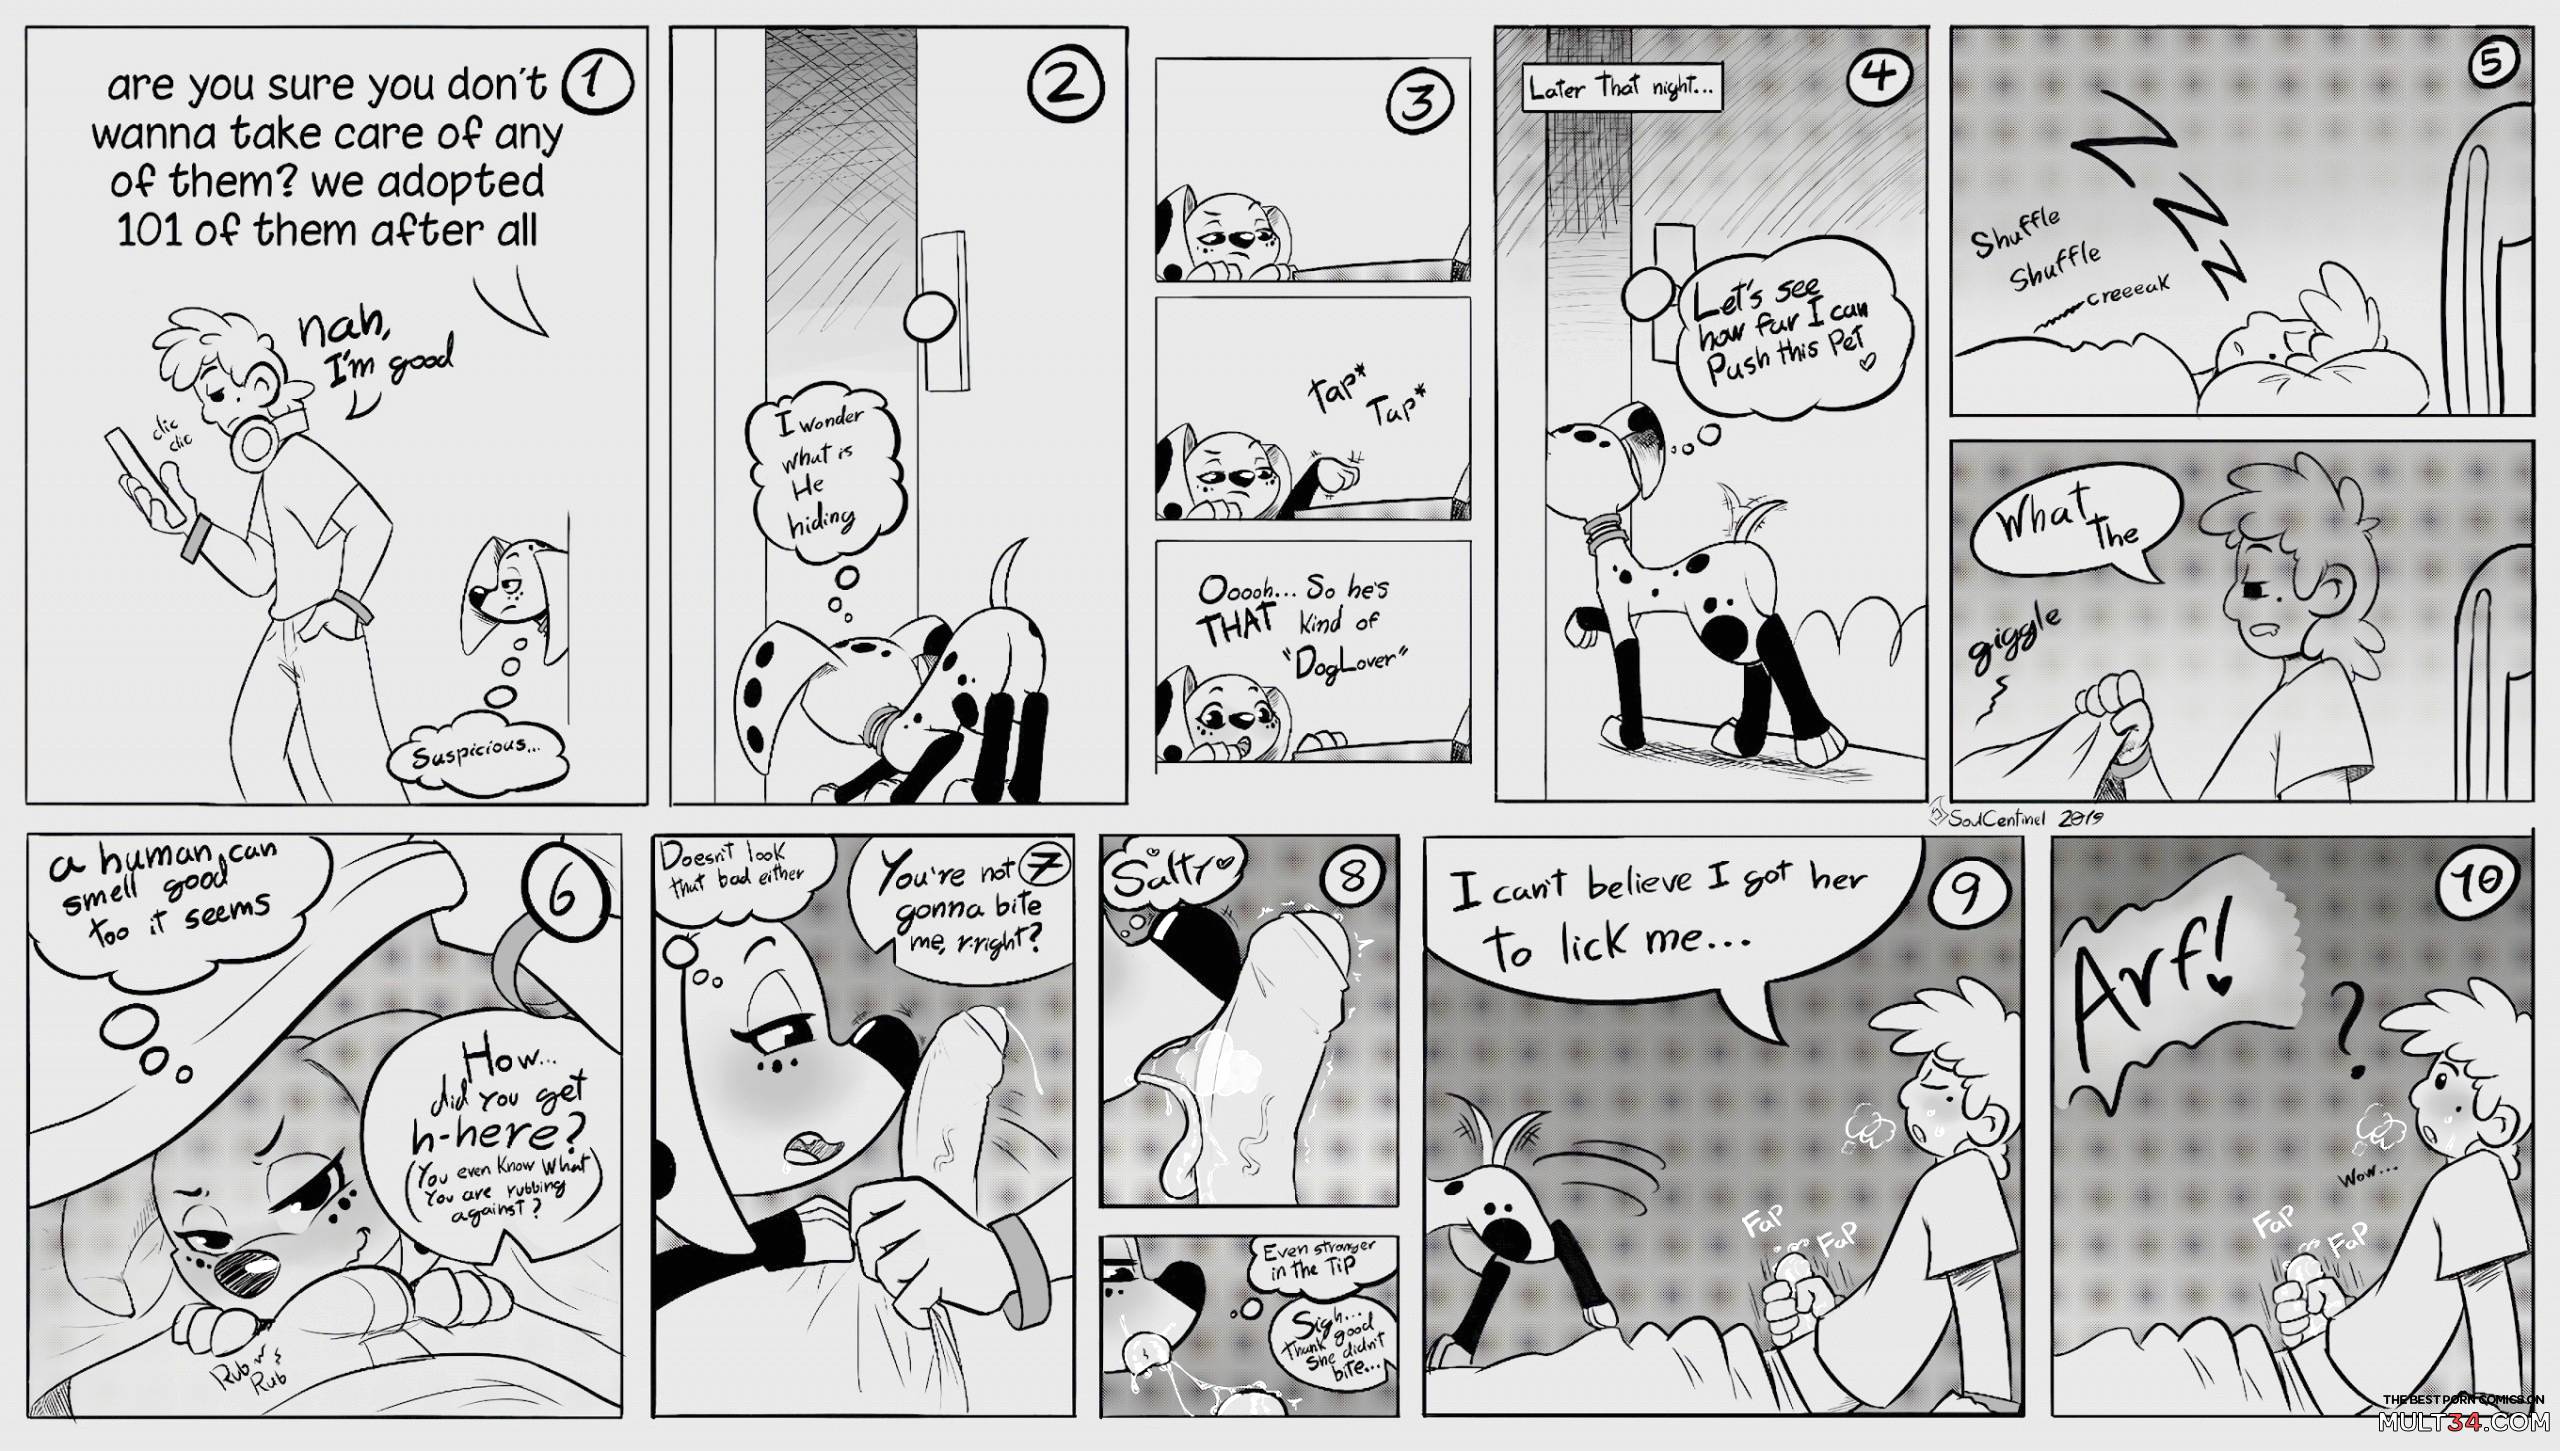 2560px x 1451px - Dalmatians 101 porn comics, cartoon porn comics, Rule 34